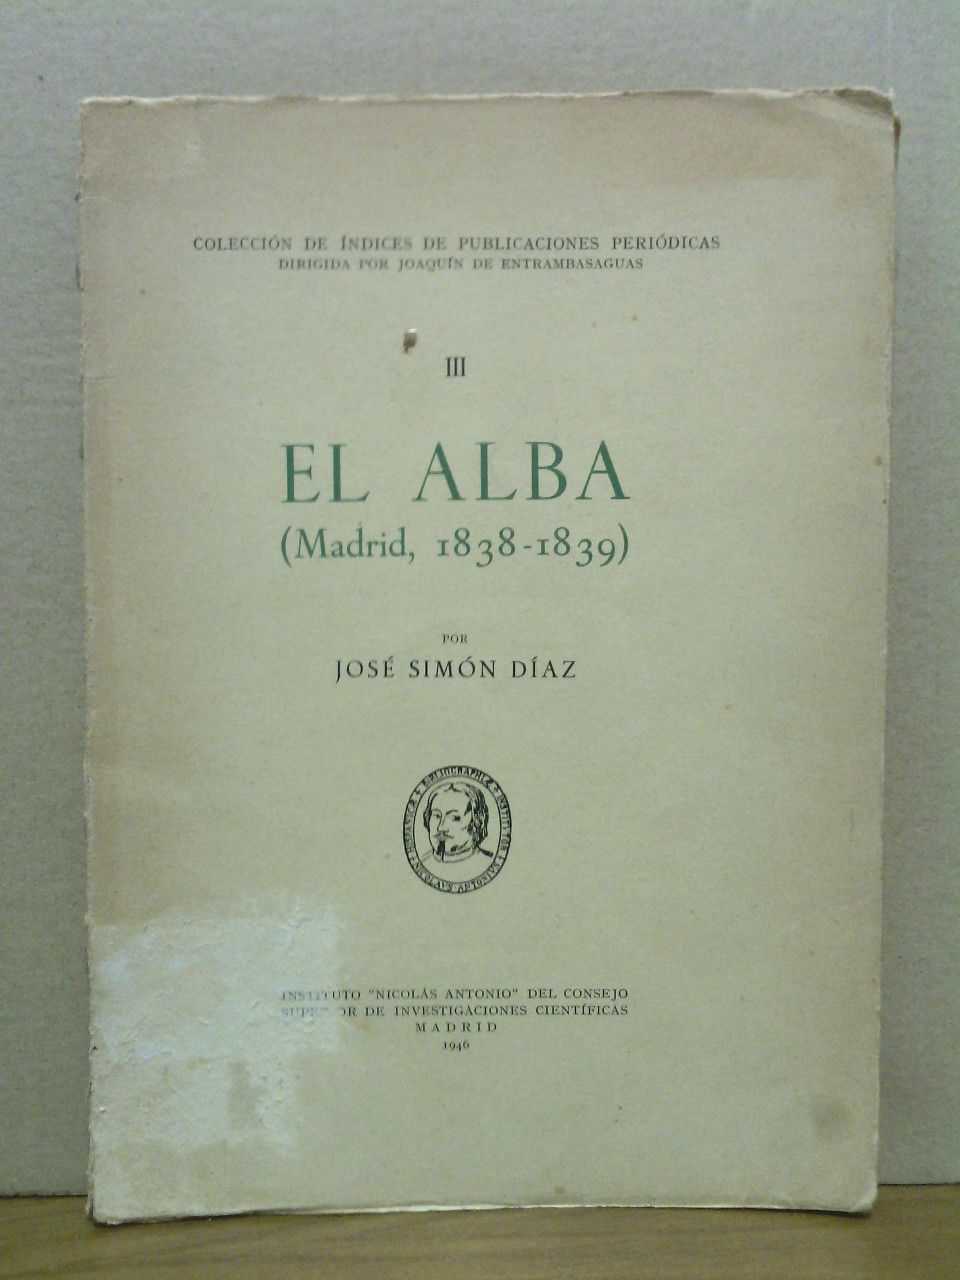 SIMON DIAZ, Jos - El Alba. (Madrid, 1838-1839)